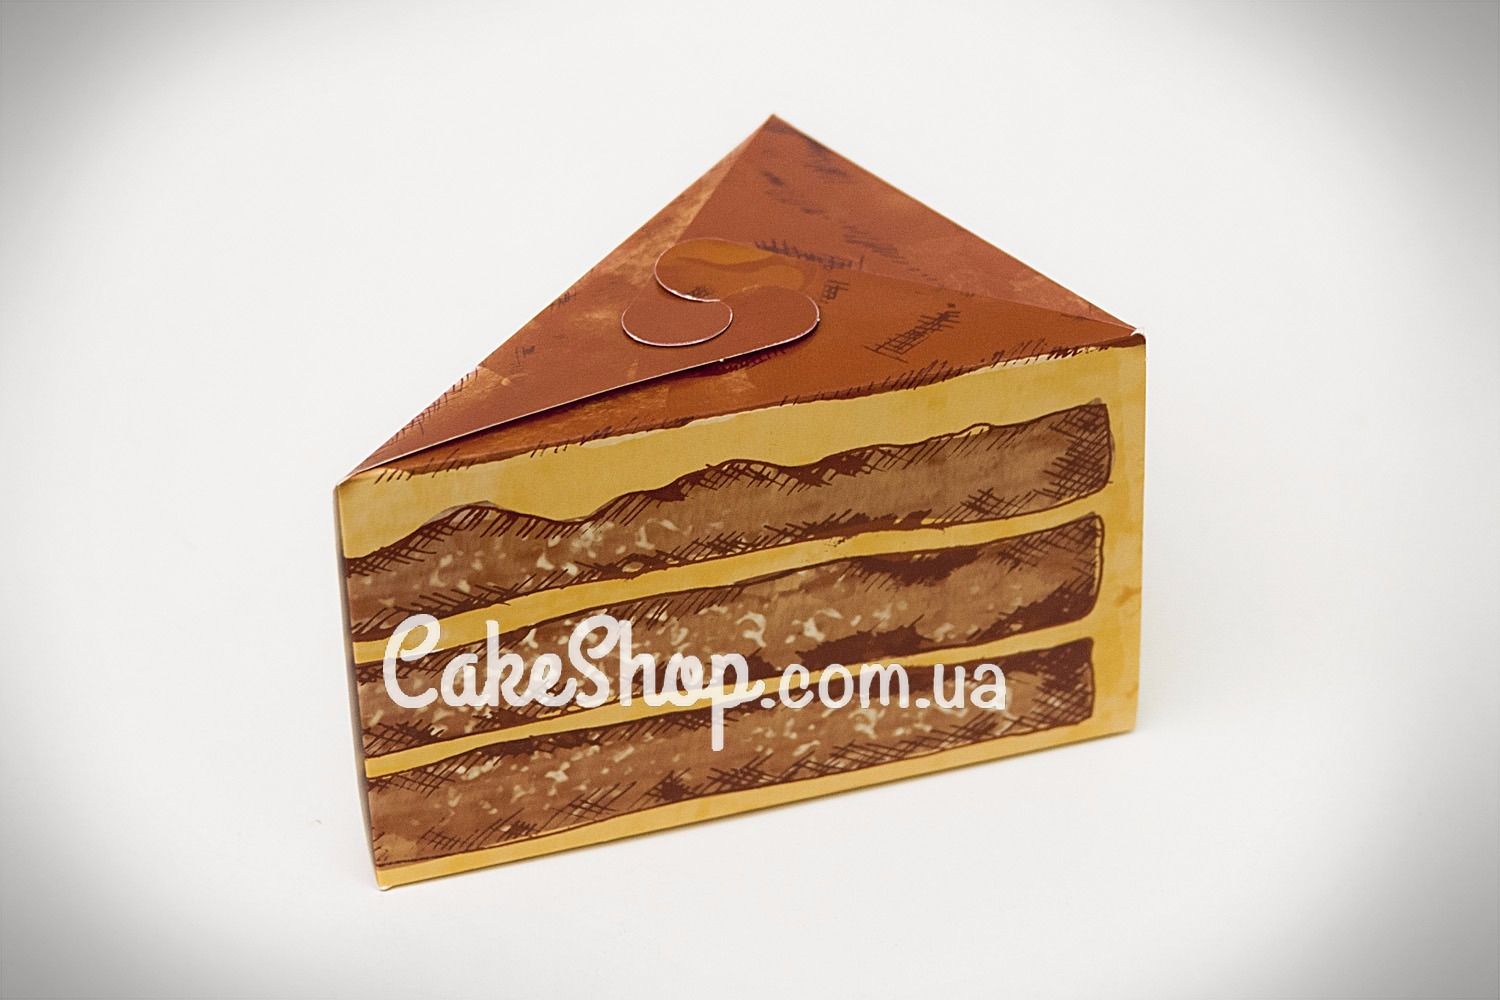 ⋗ Коробка для сладостей Тортик  купить в Украине ➛ CakeShop.com.ua, фото